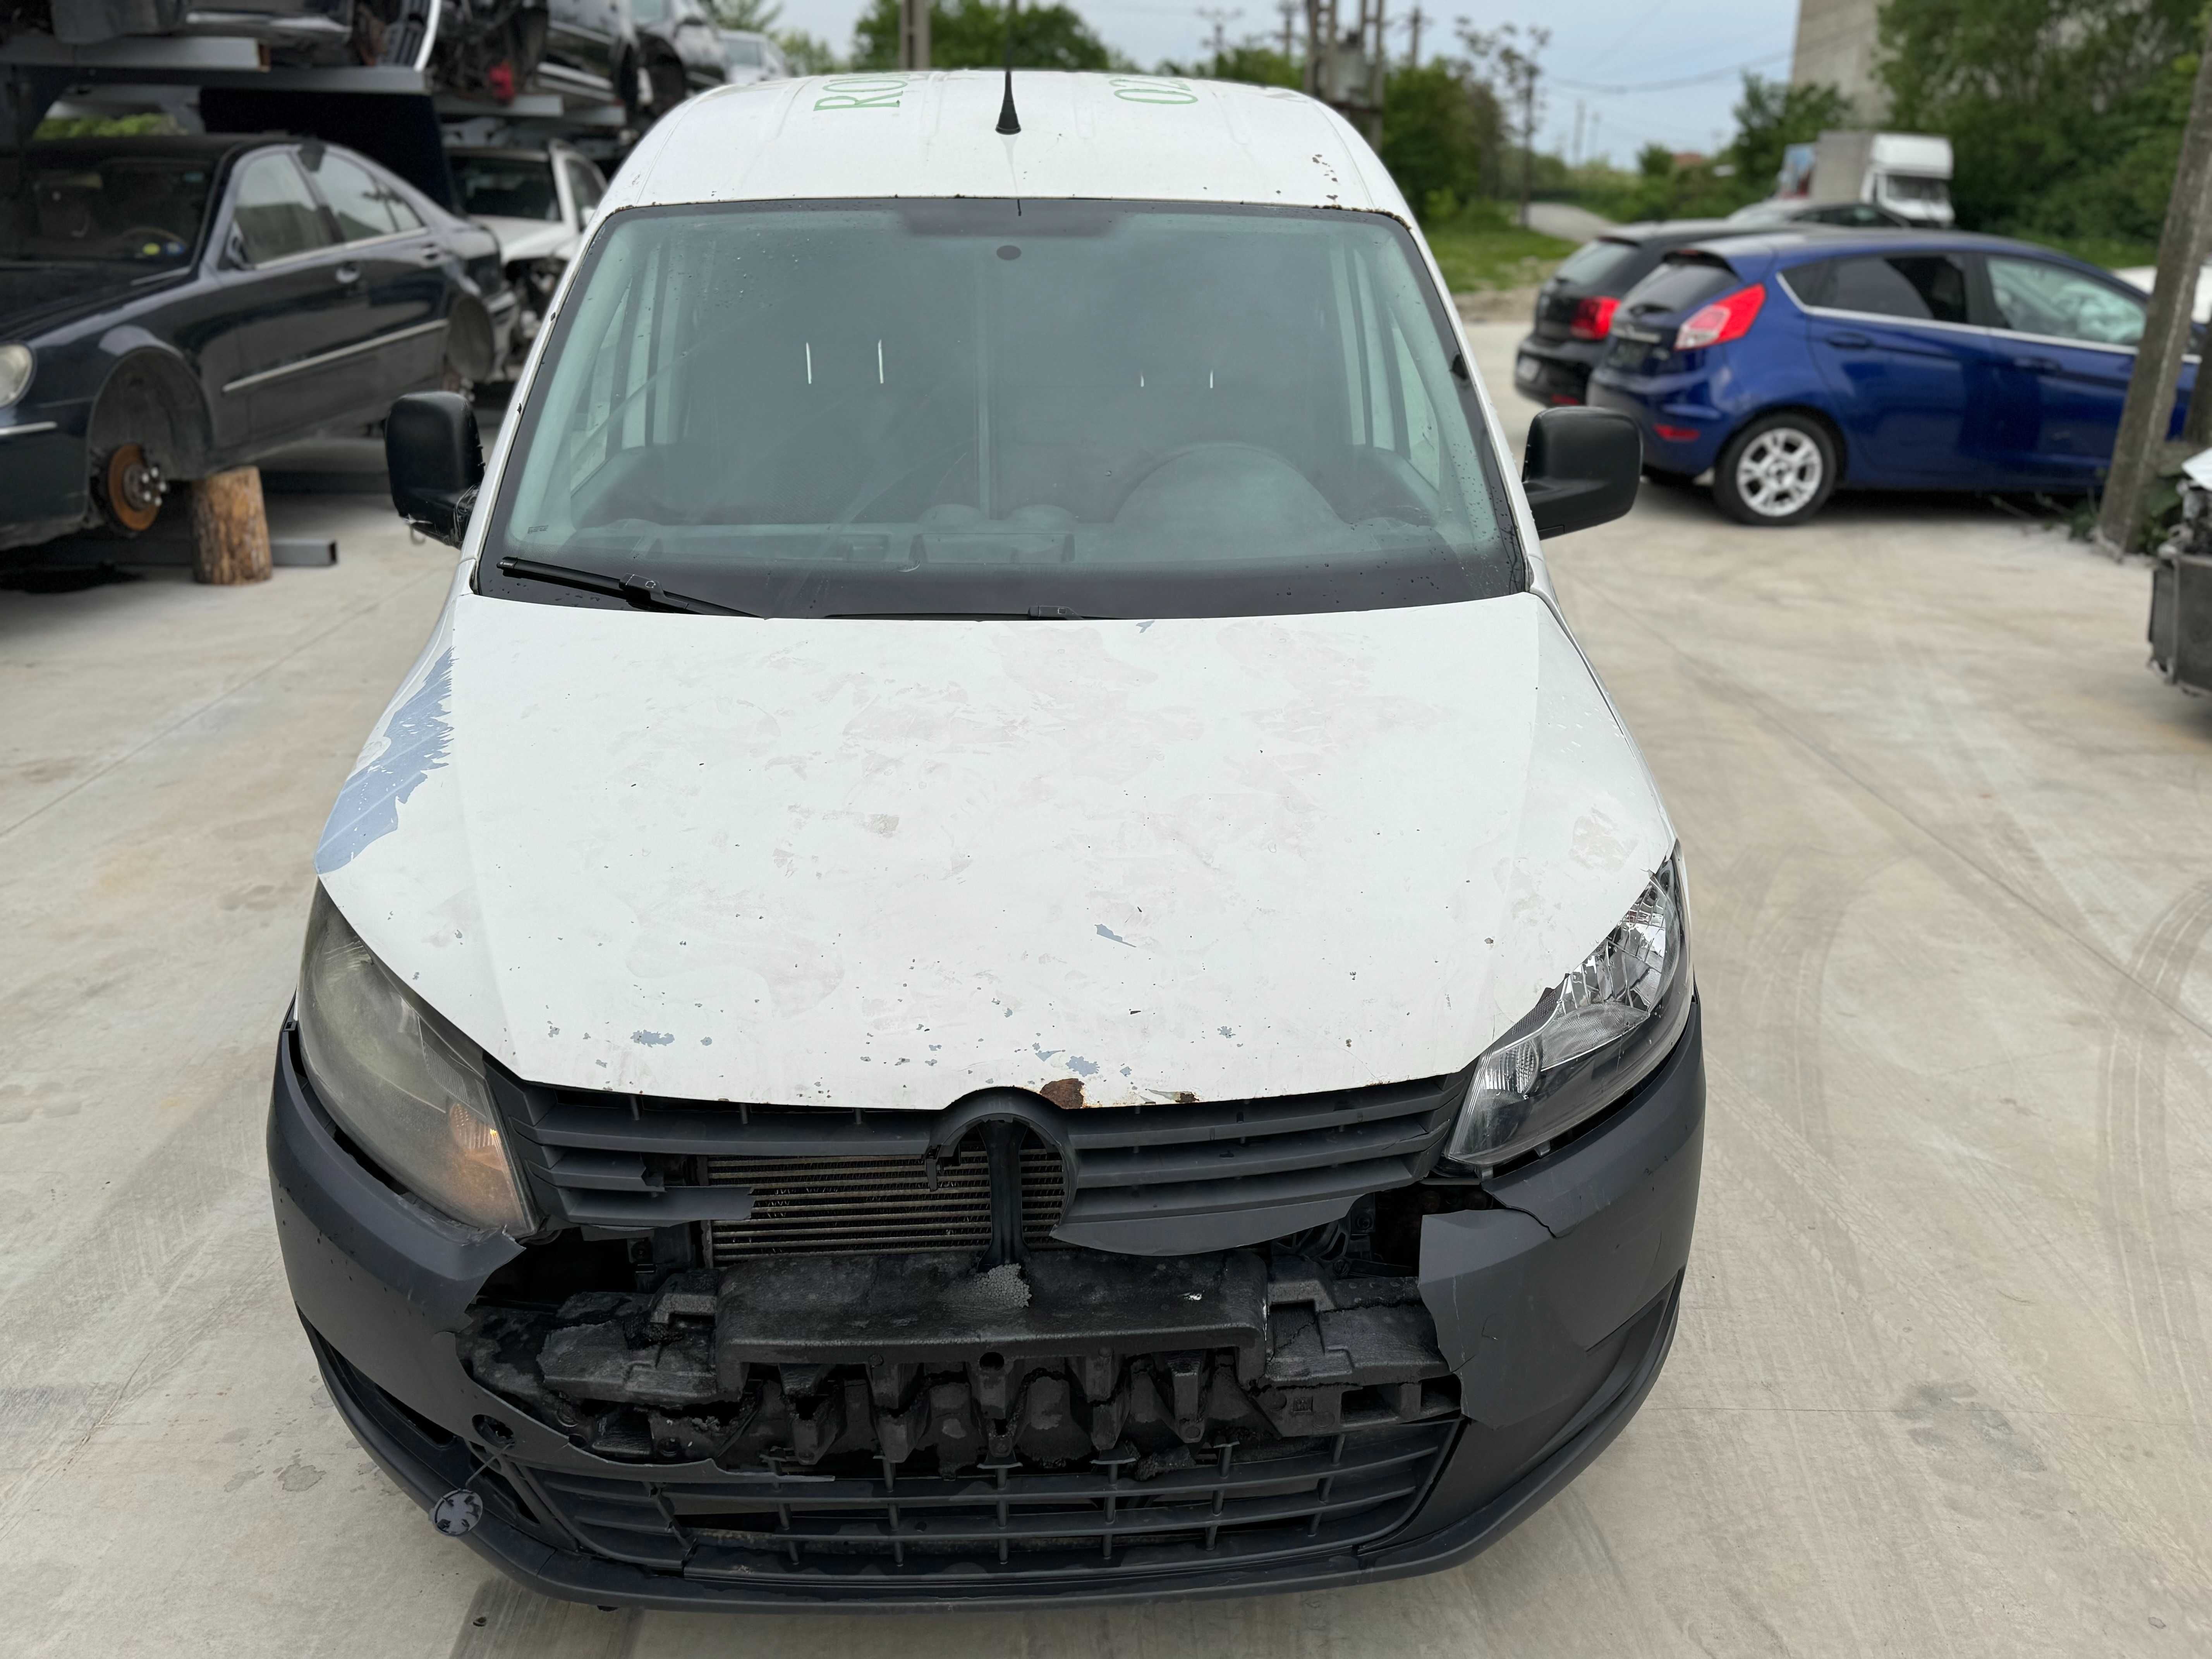 Volkswagen caddy 1.6 tdi euro5 2011 avariat avariate lovit